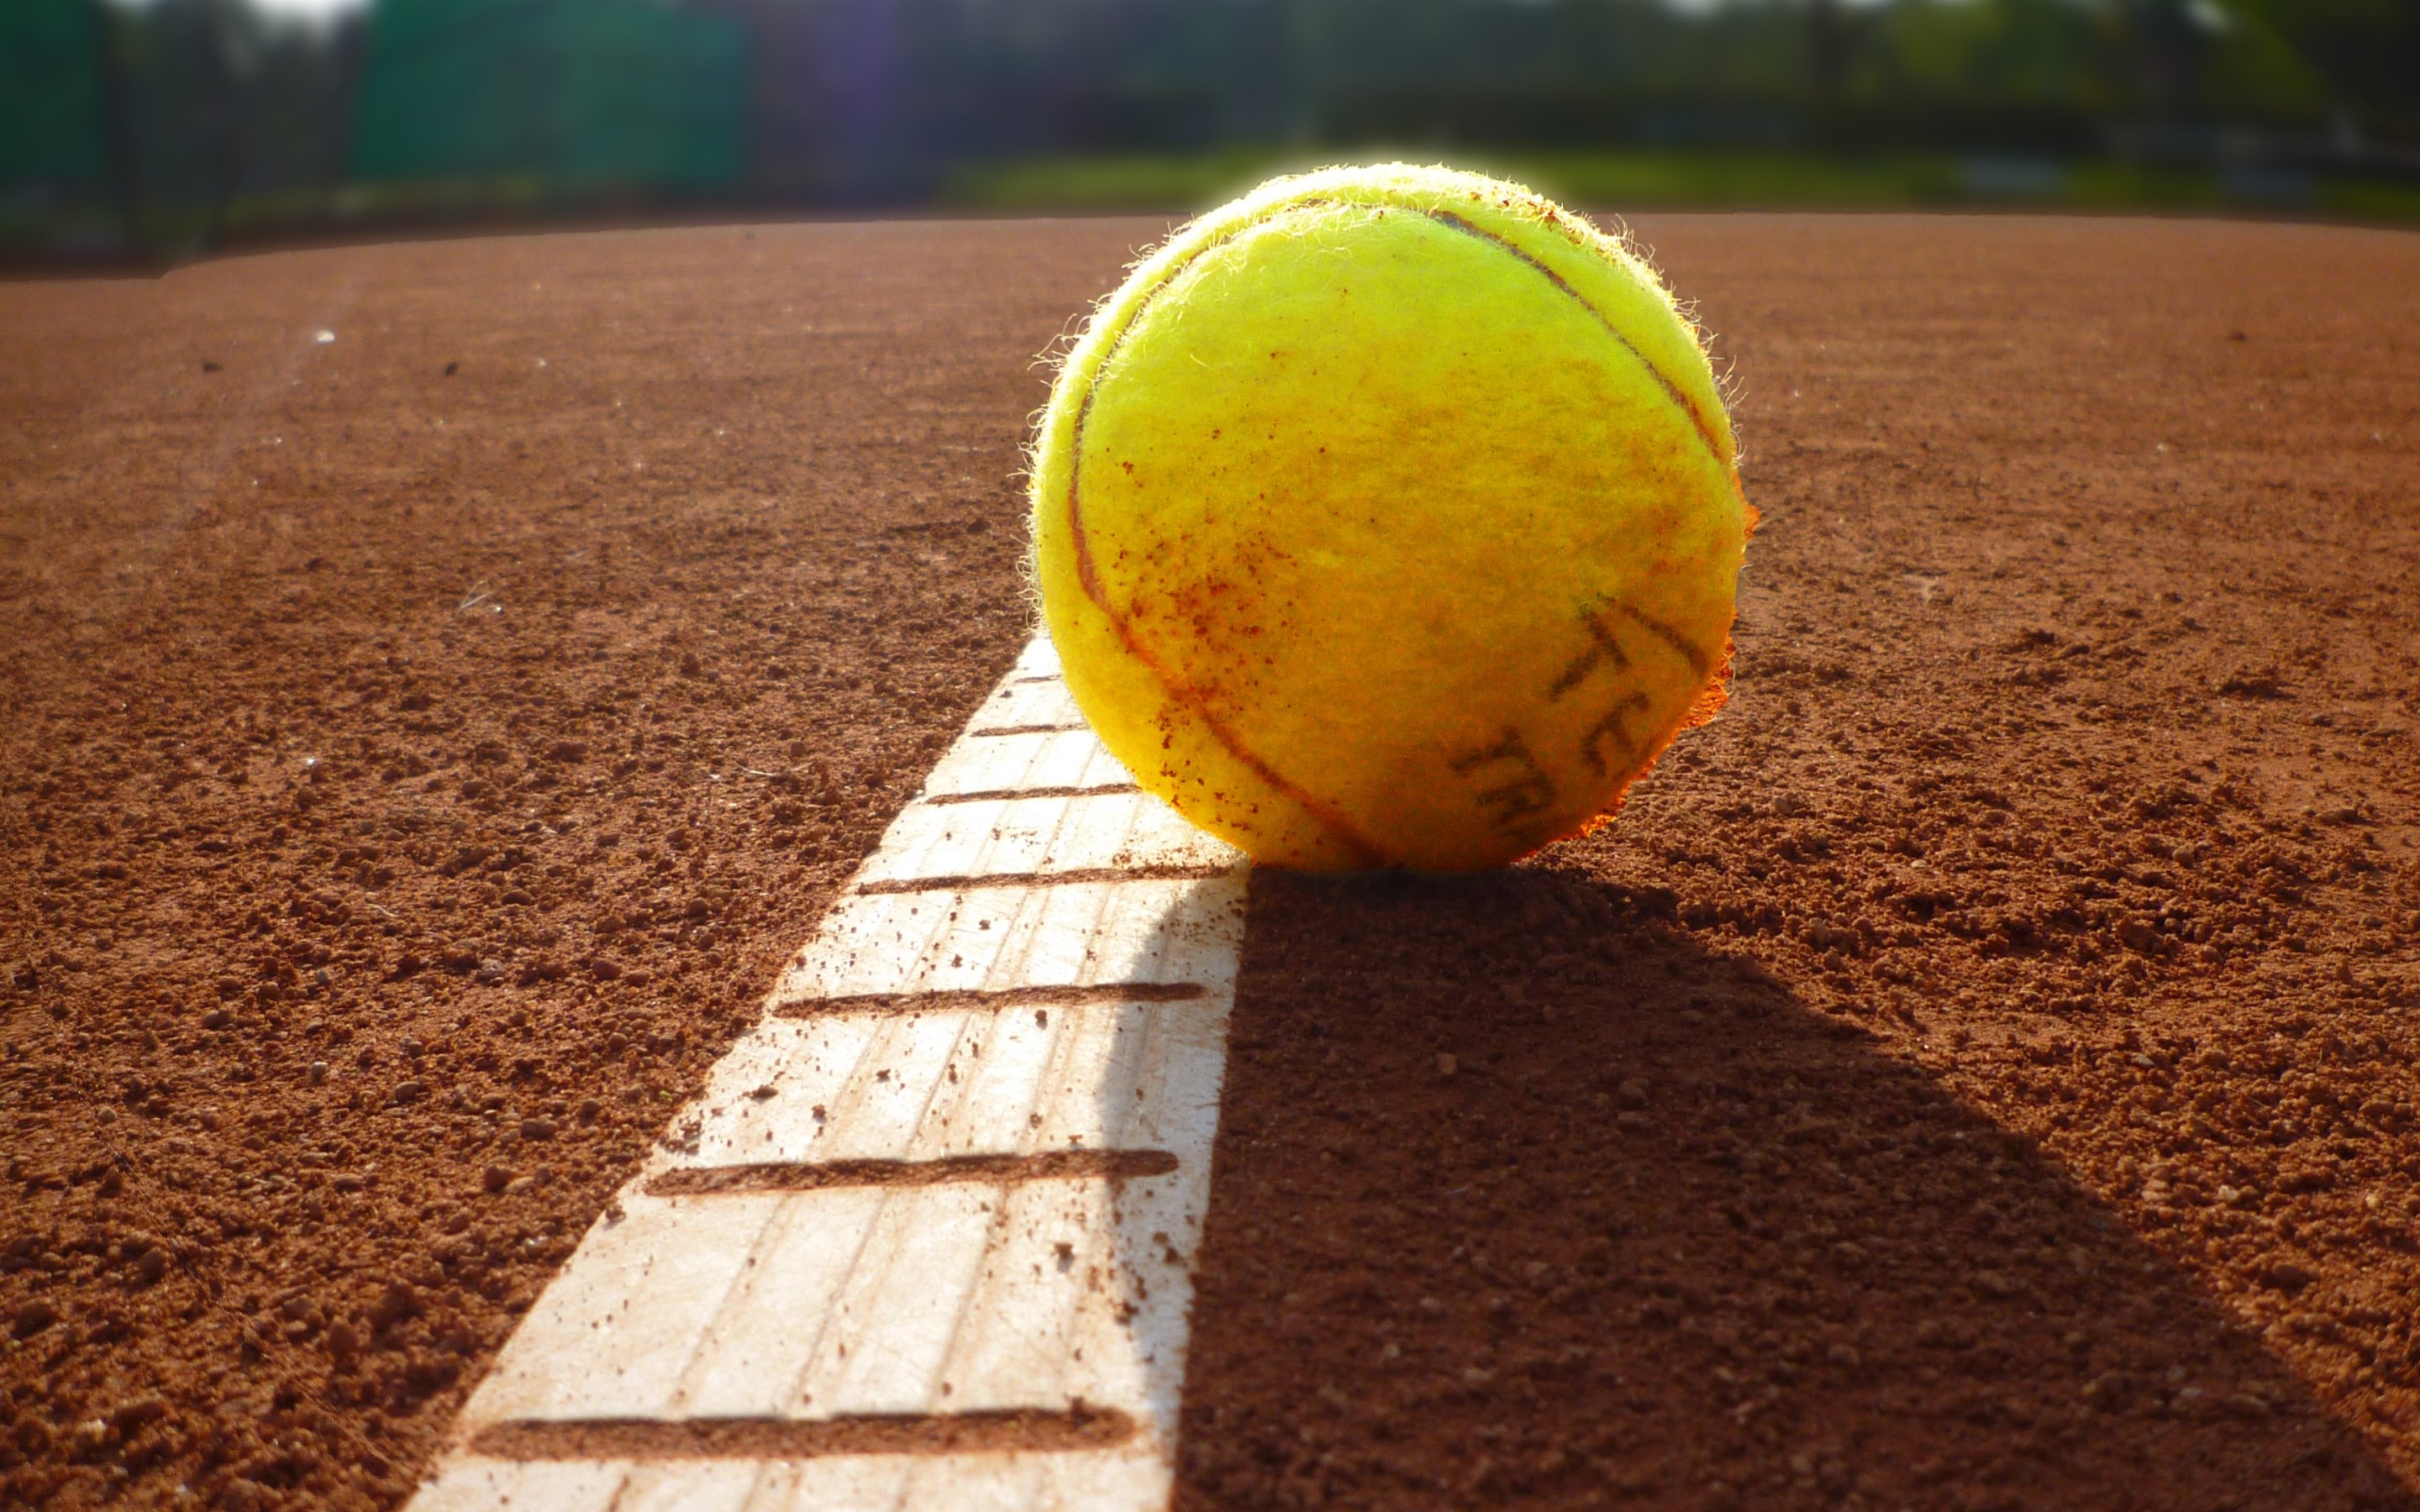 테니스 벽지,테니스 공,테니스,테니스 코트,라켓 스포츠,노랑